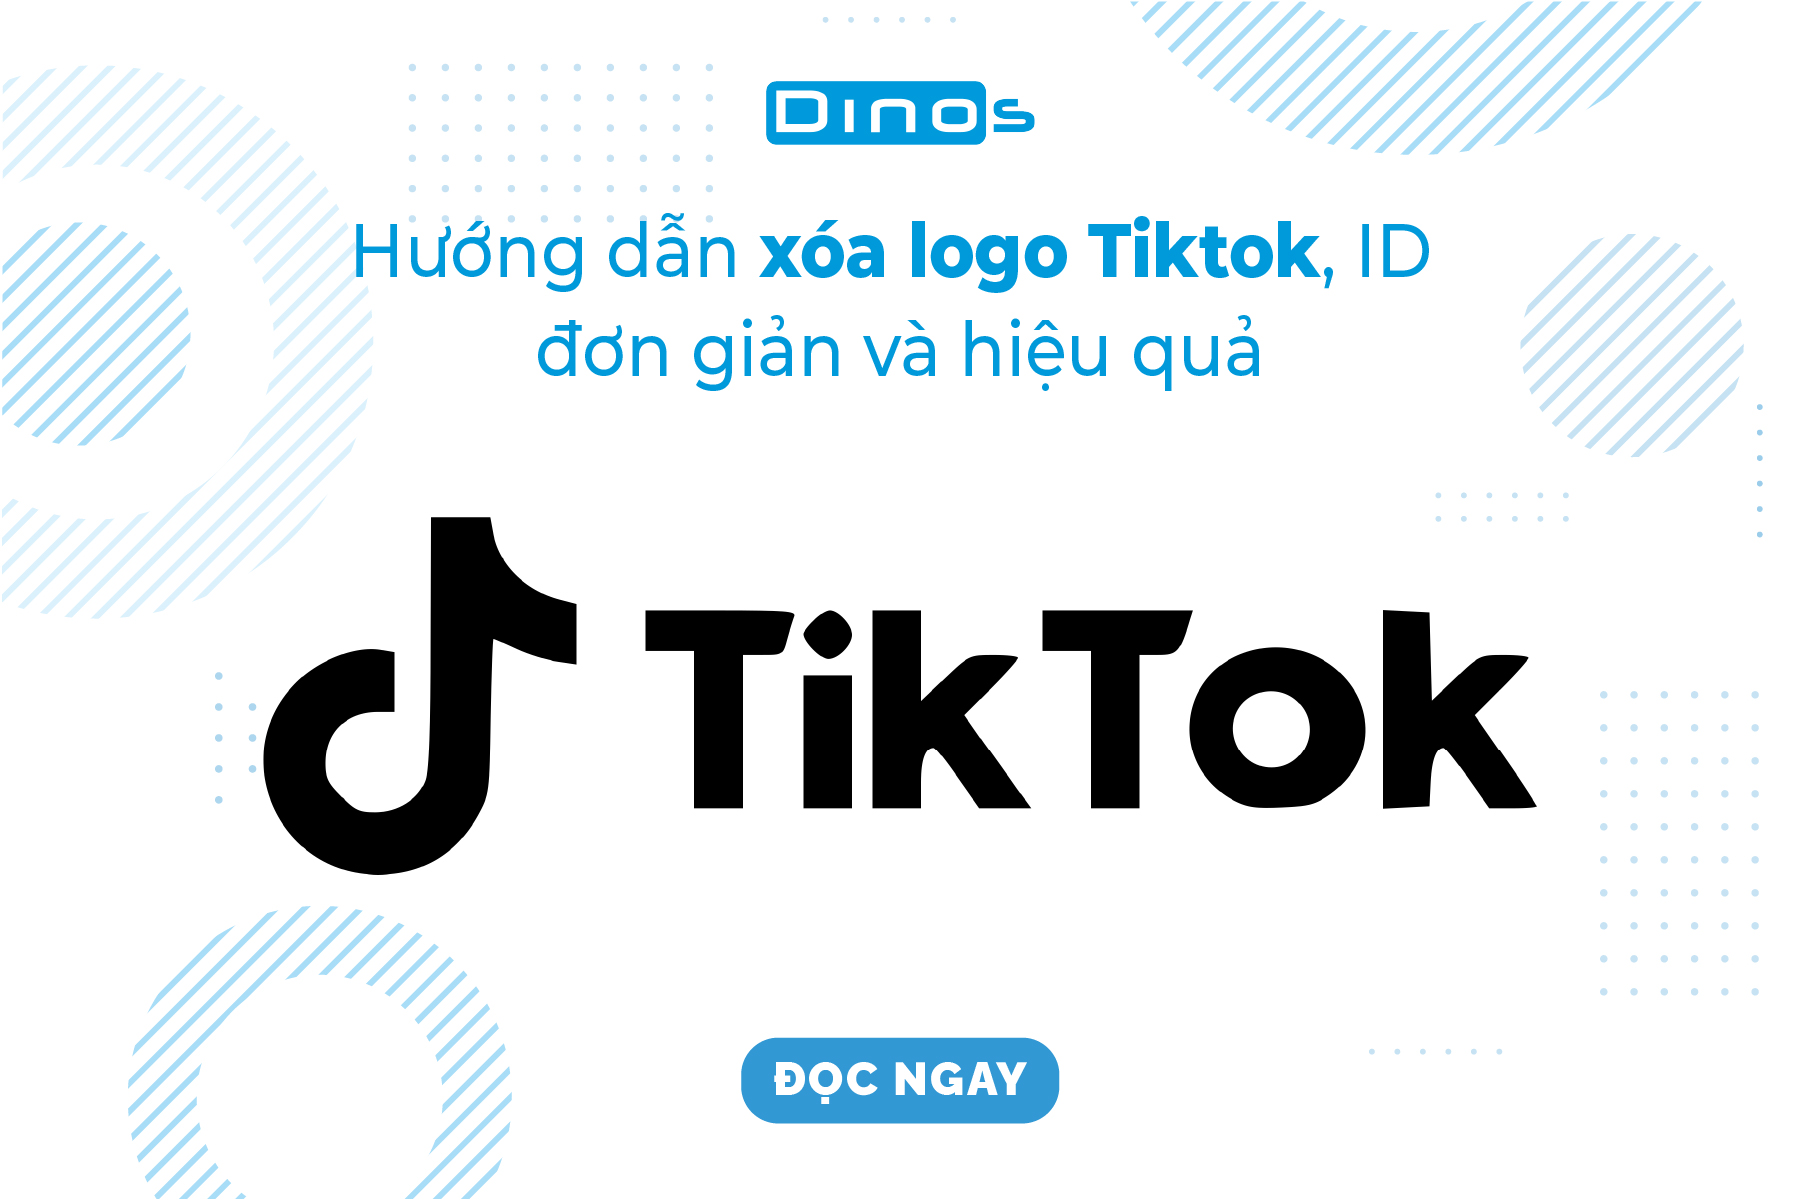 Tiktok không chỉ là nơi cho bạn thể hiện tính cách độc đáo của bản thân, mà còn là chỗ để thể hiện sự đổi mới và quảng bá mặt hàng với khách hàng. Hãy xoá logo và ID Tiktok của bạn để tạo sự khác biệt và thu hút sự chú ý từ khách hàng tiềm năng.